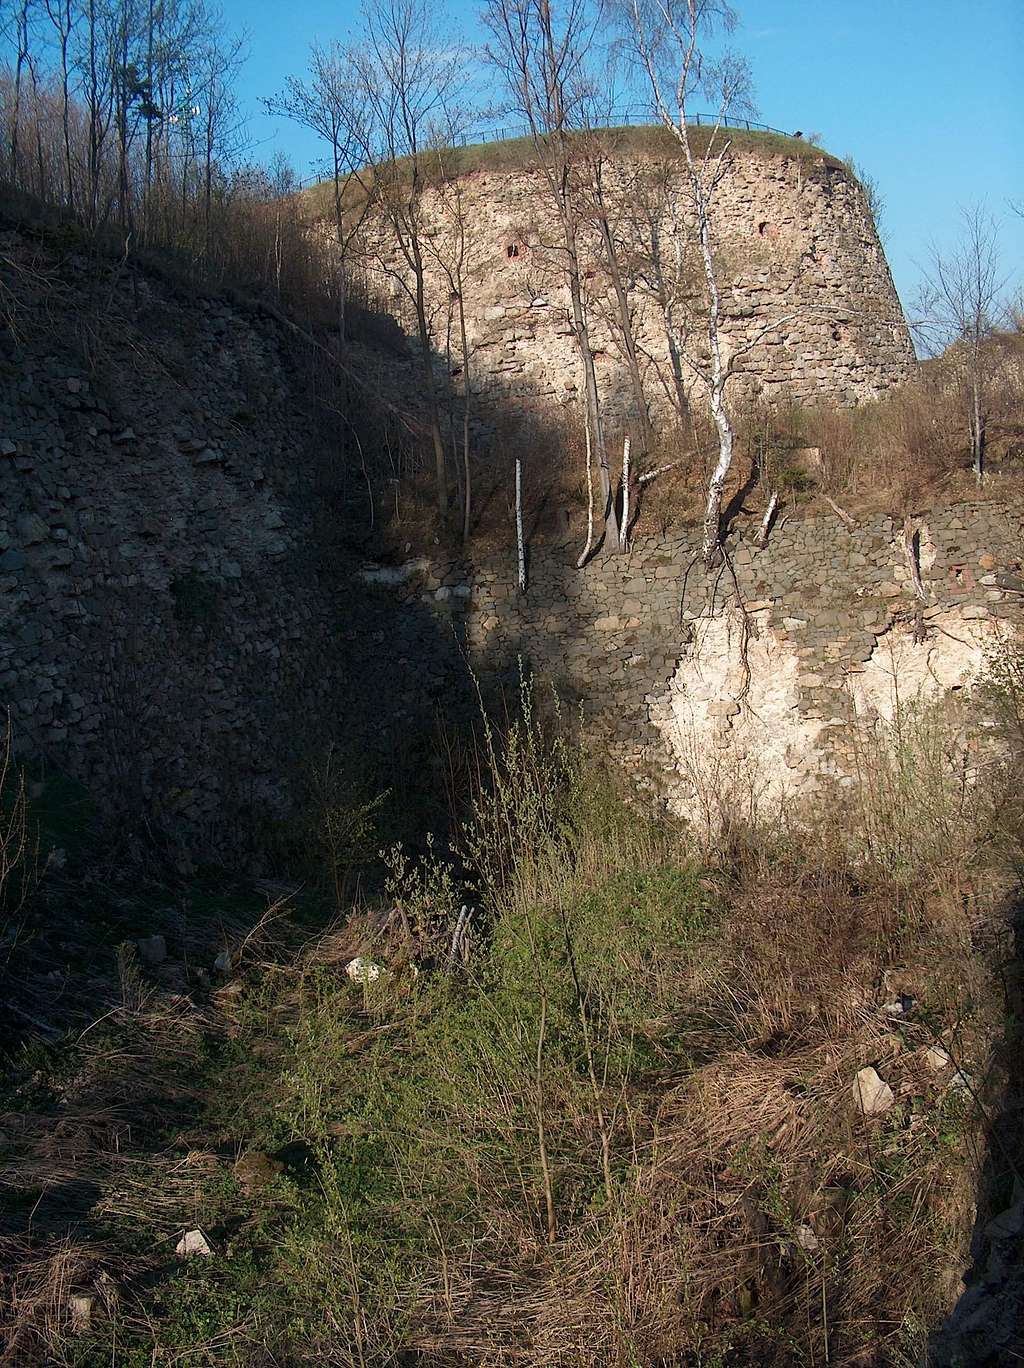 Fort Rogowy near Srebna Gora